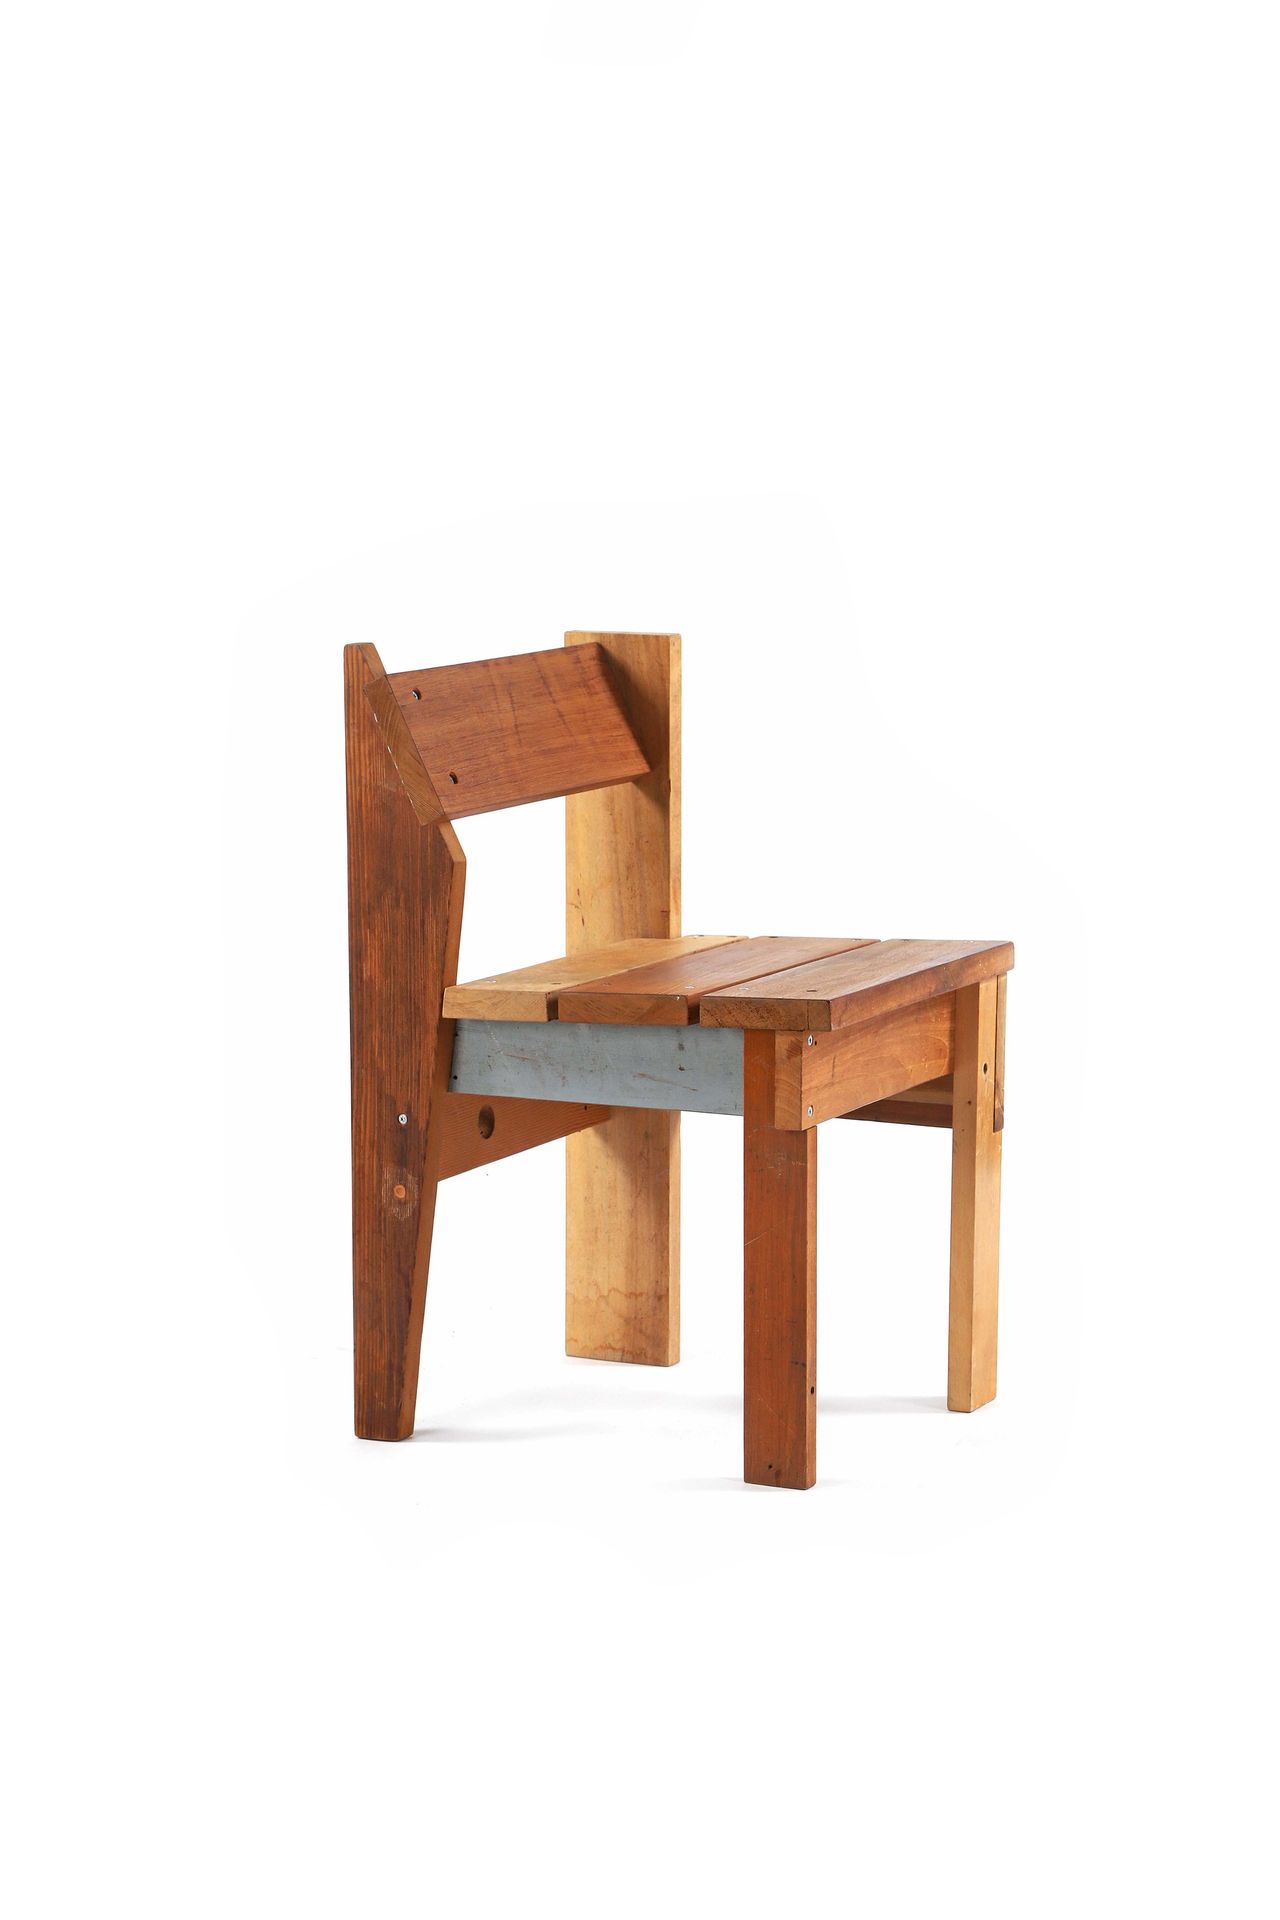 Rikkert PAAUW (1982) Stuhl 
Holz, Metall
(Materialien gefunden und gelagert in U&hellip;